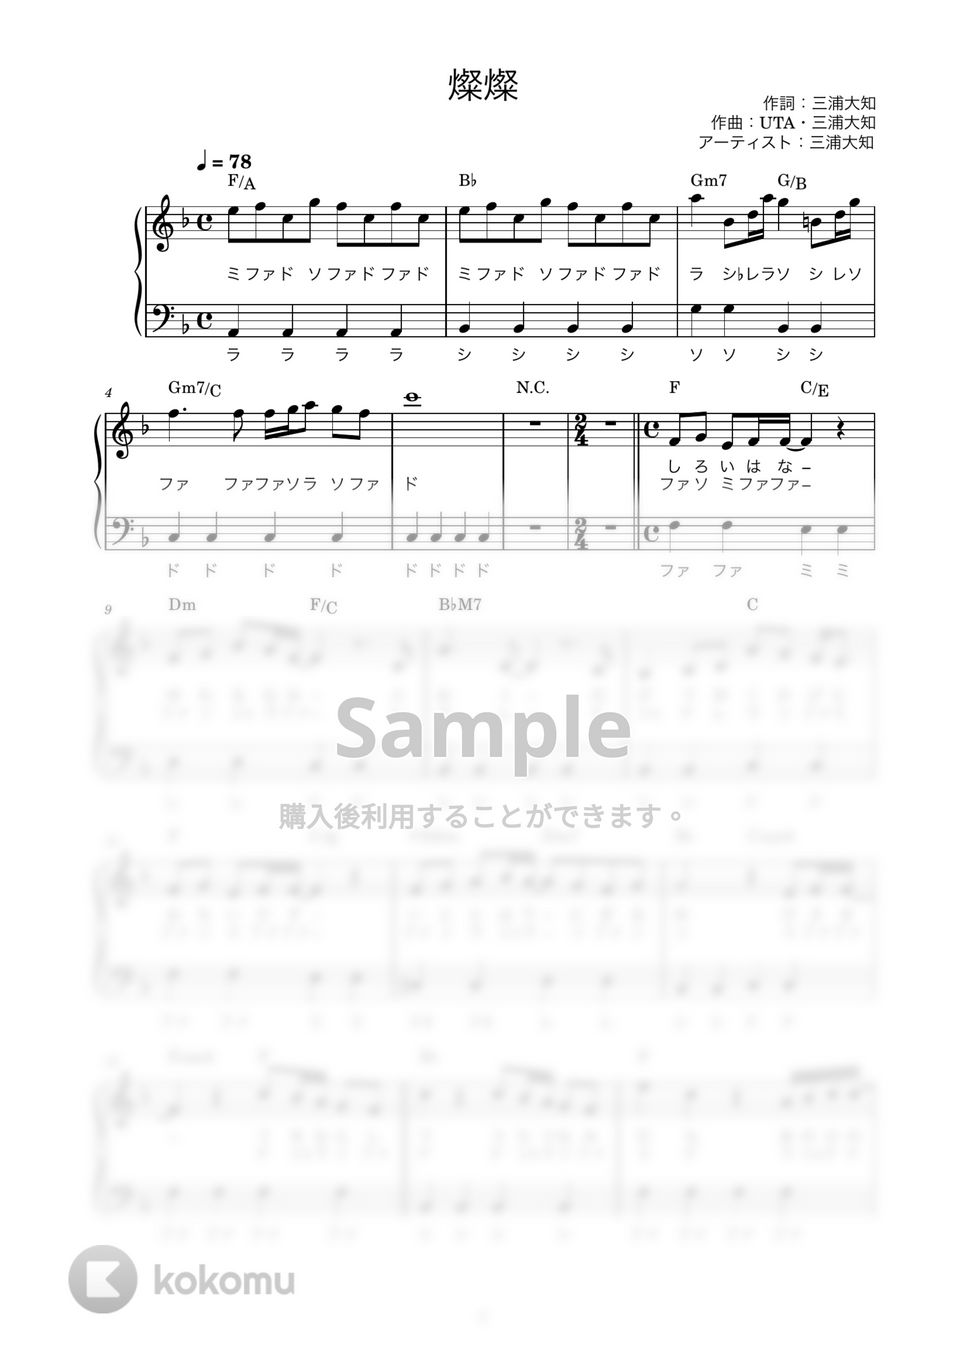 三浦大知 - 燦燦 (かんたん / 歌詞付き / ドレミ付き / 初心者) by piano.tokyo